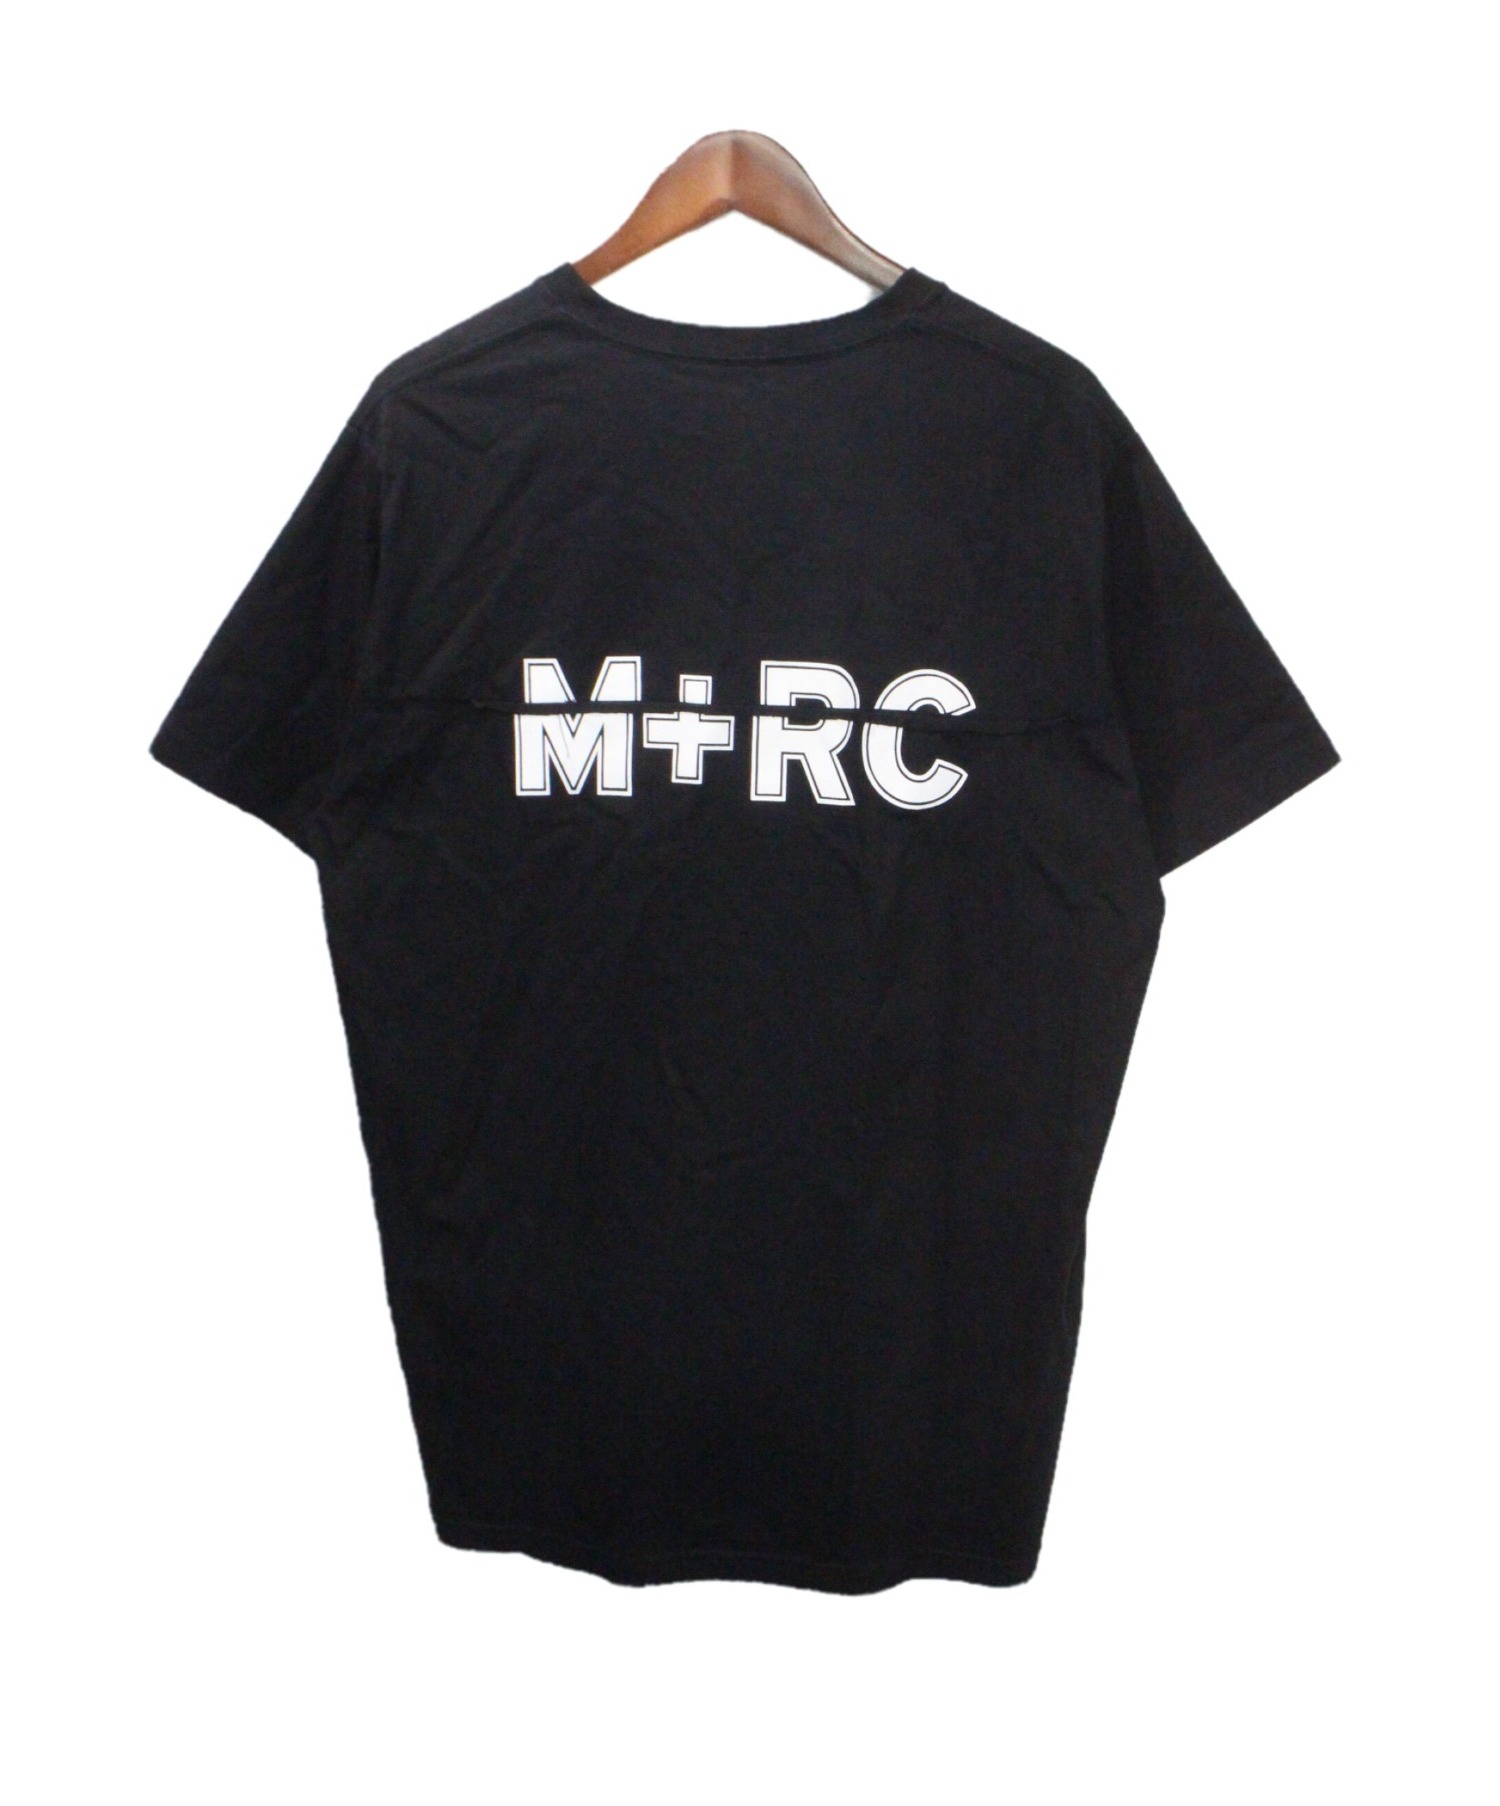 M+RC マルシェノア Tシャツ L-